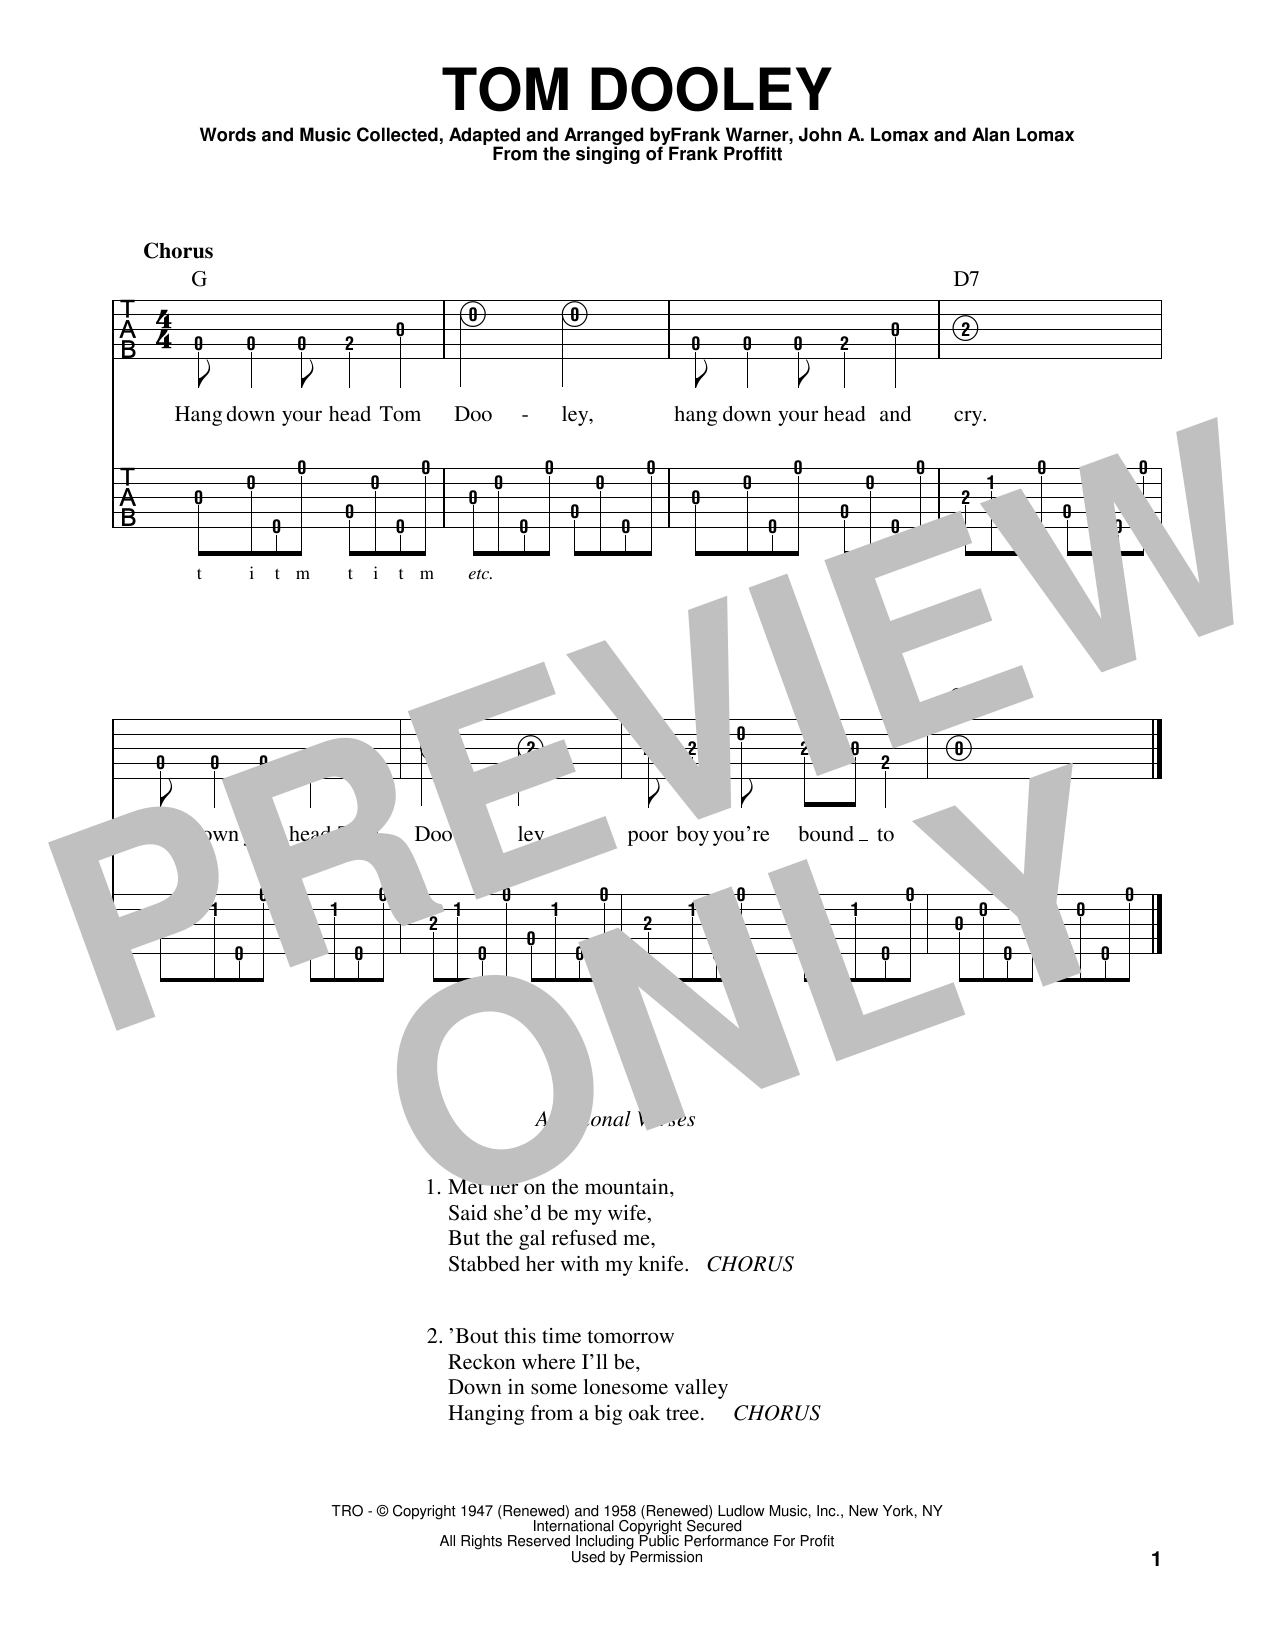 Frank Warner Tom Dooley Sheet Music Notes & Chords for Banjo - Download or Print PDF